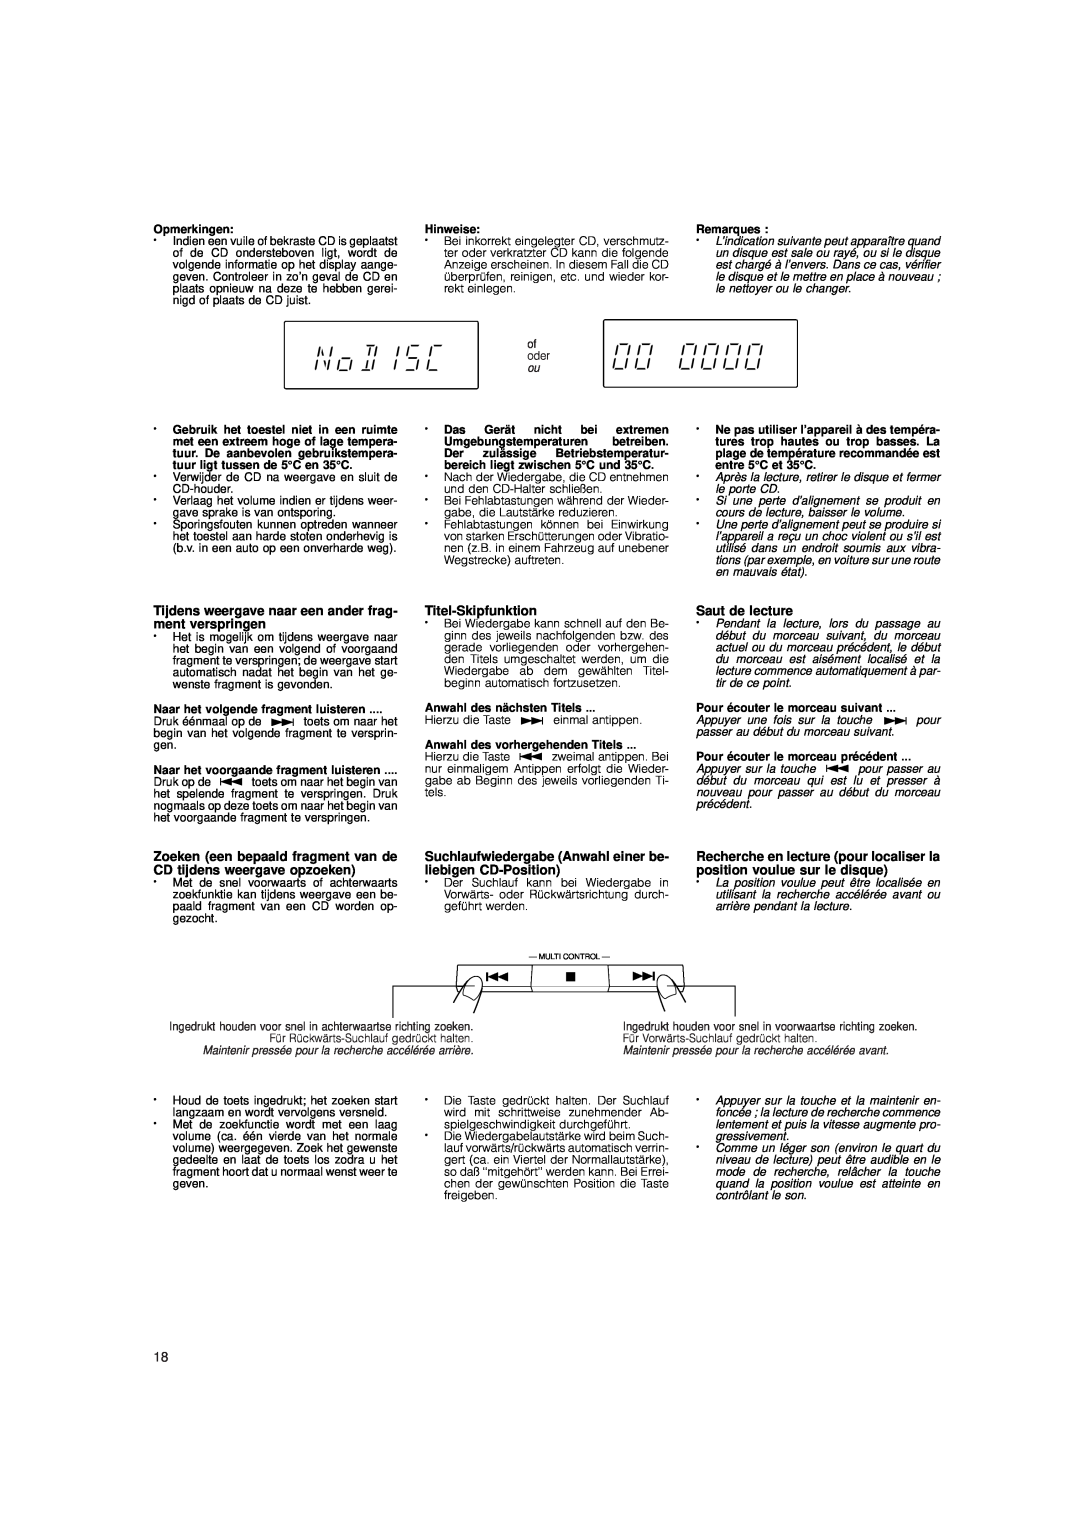 JVC DX-E55 manual Titel-Skipfunktion, Saut de lecture 